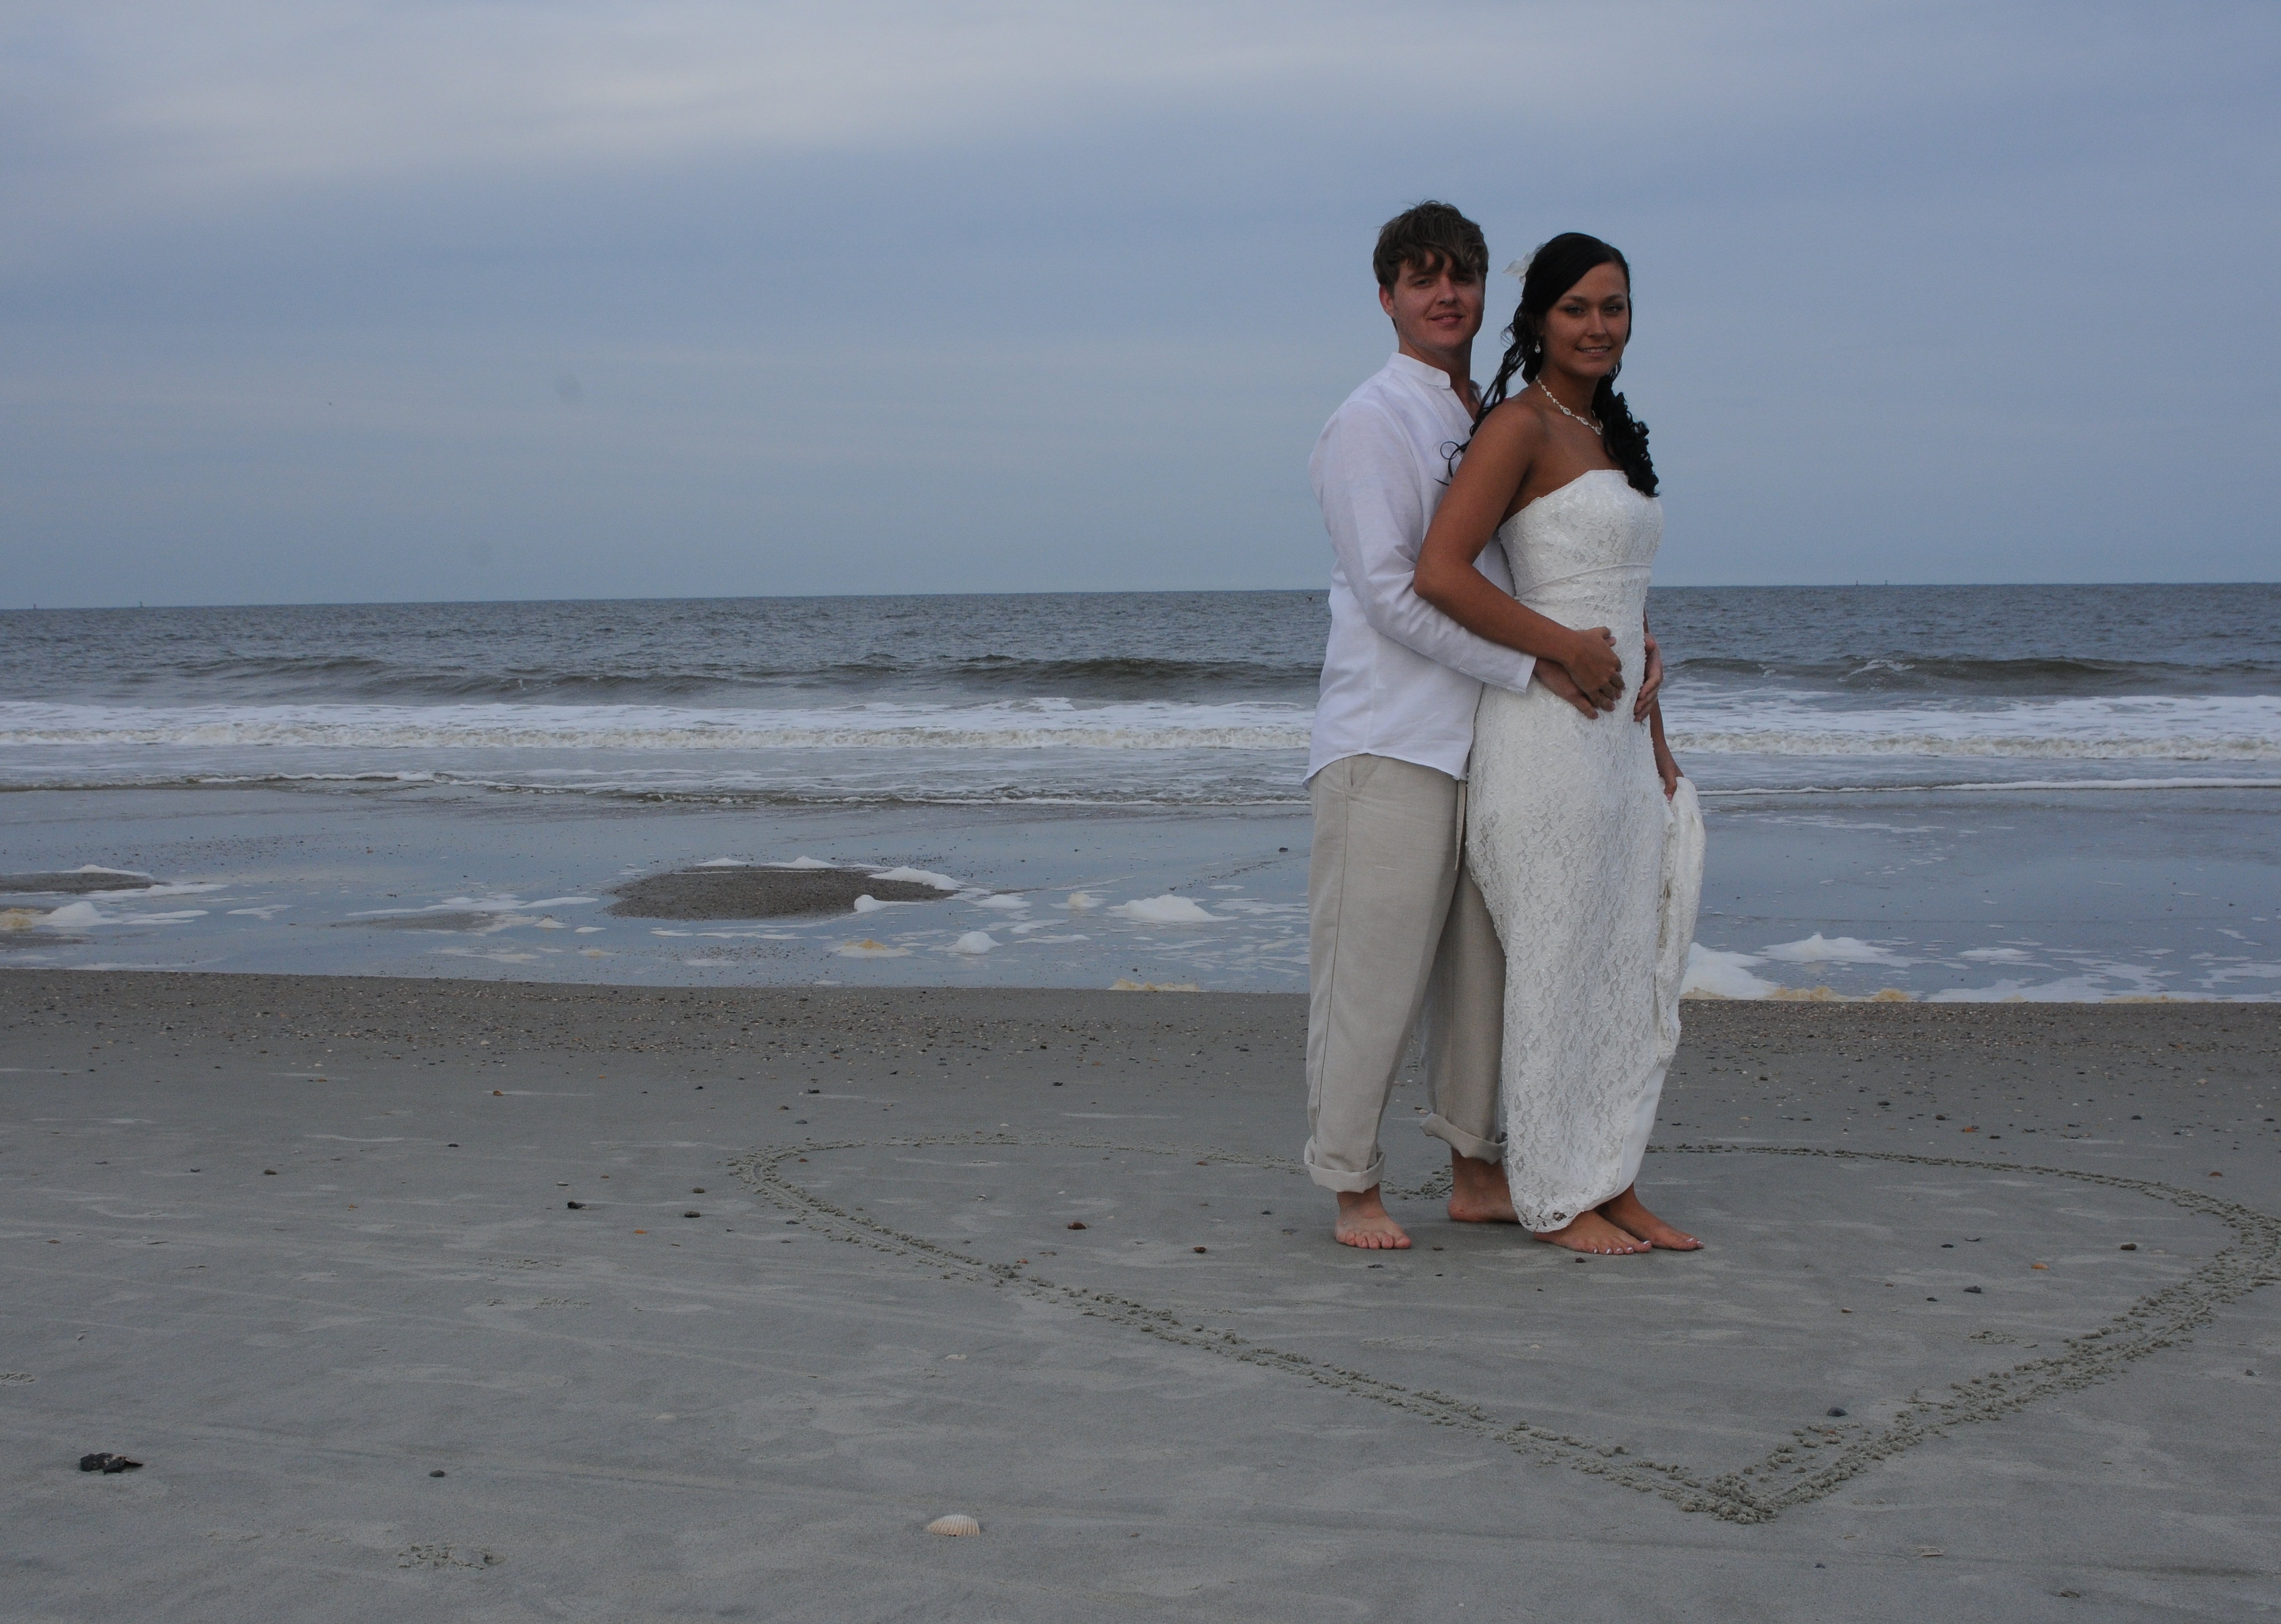 Free Download Tybee Island Weddings By Tybee Island Inn On